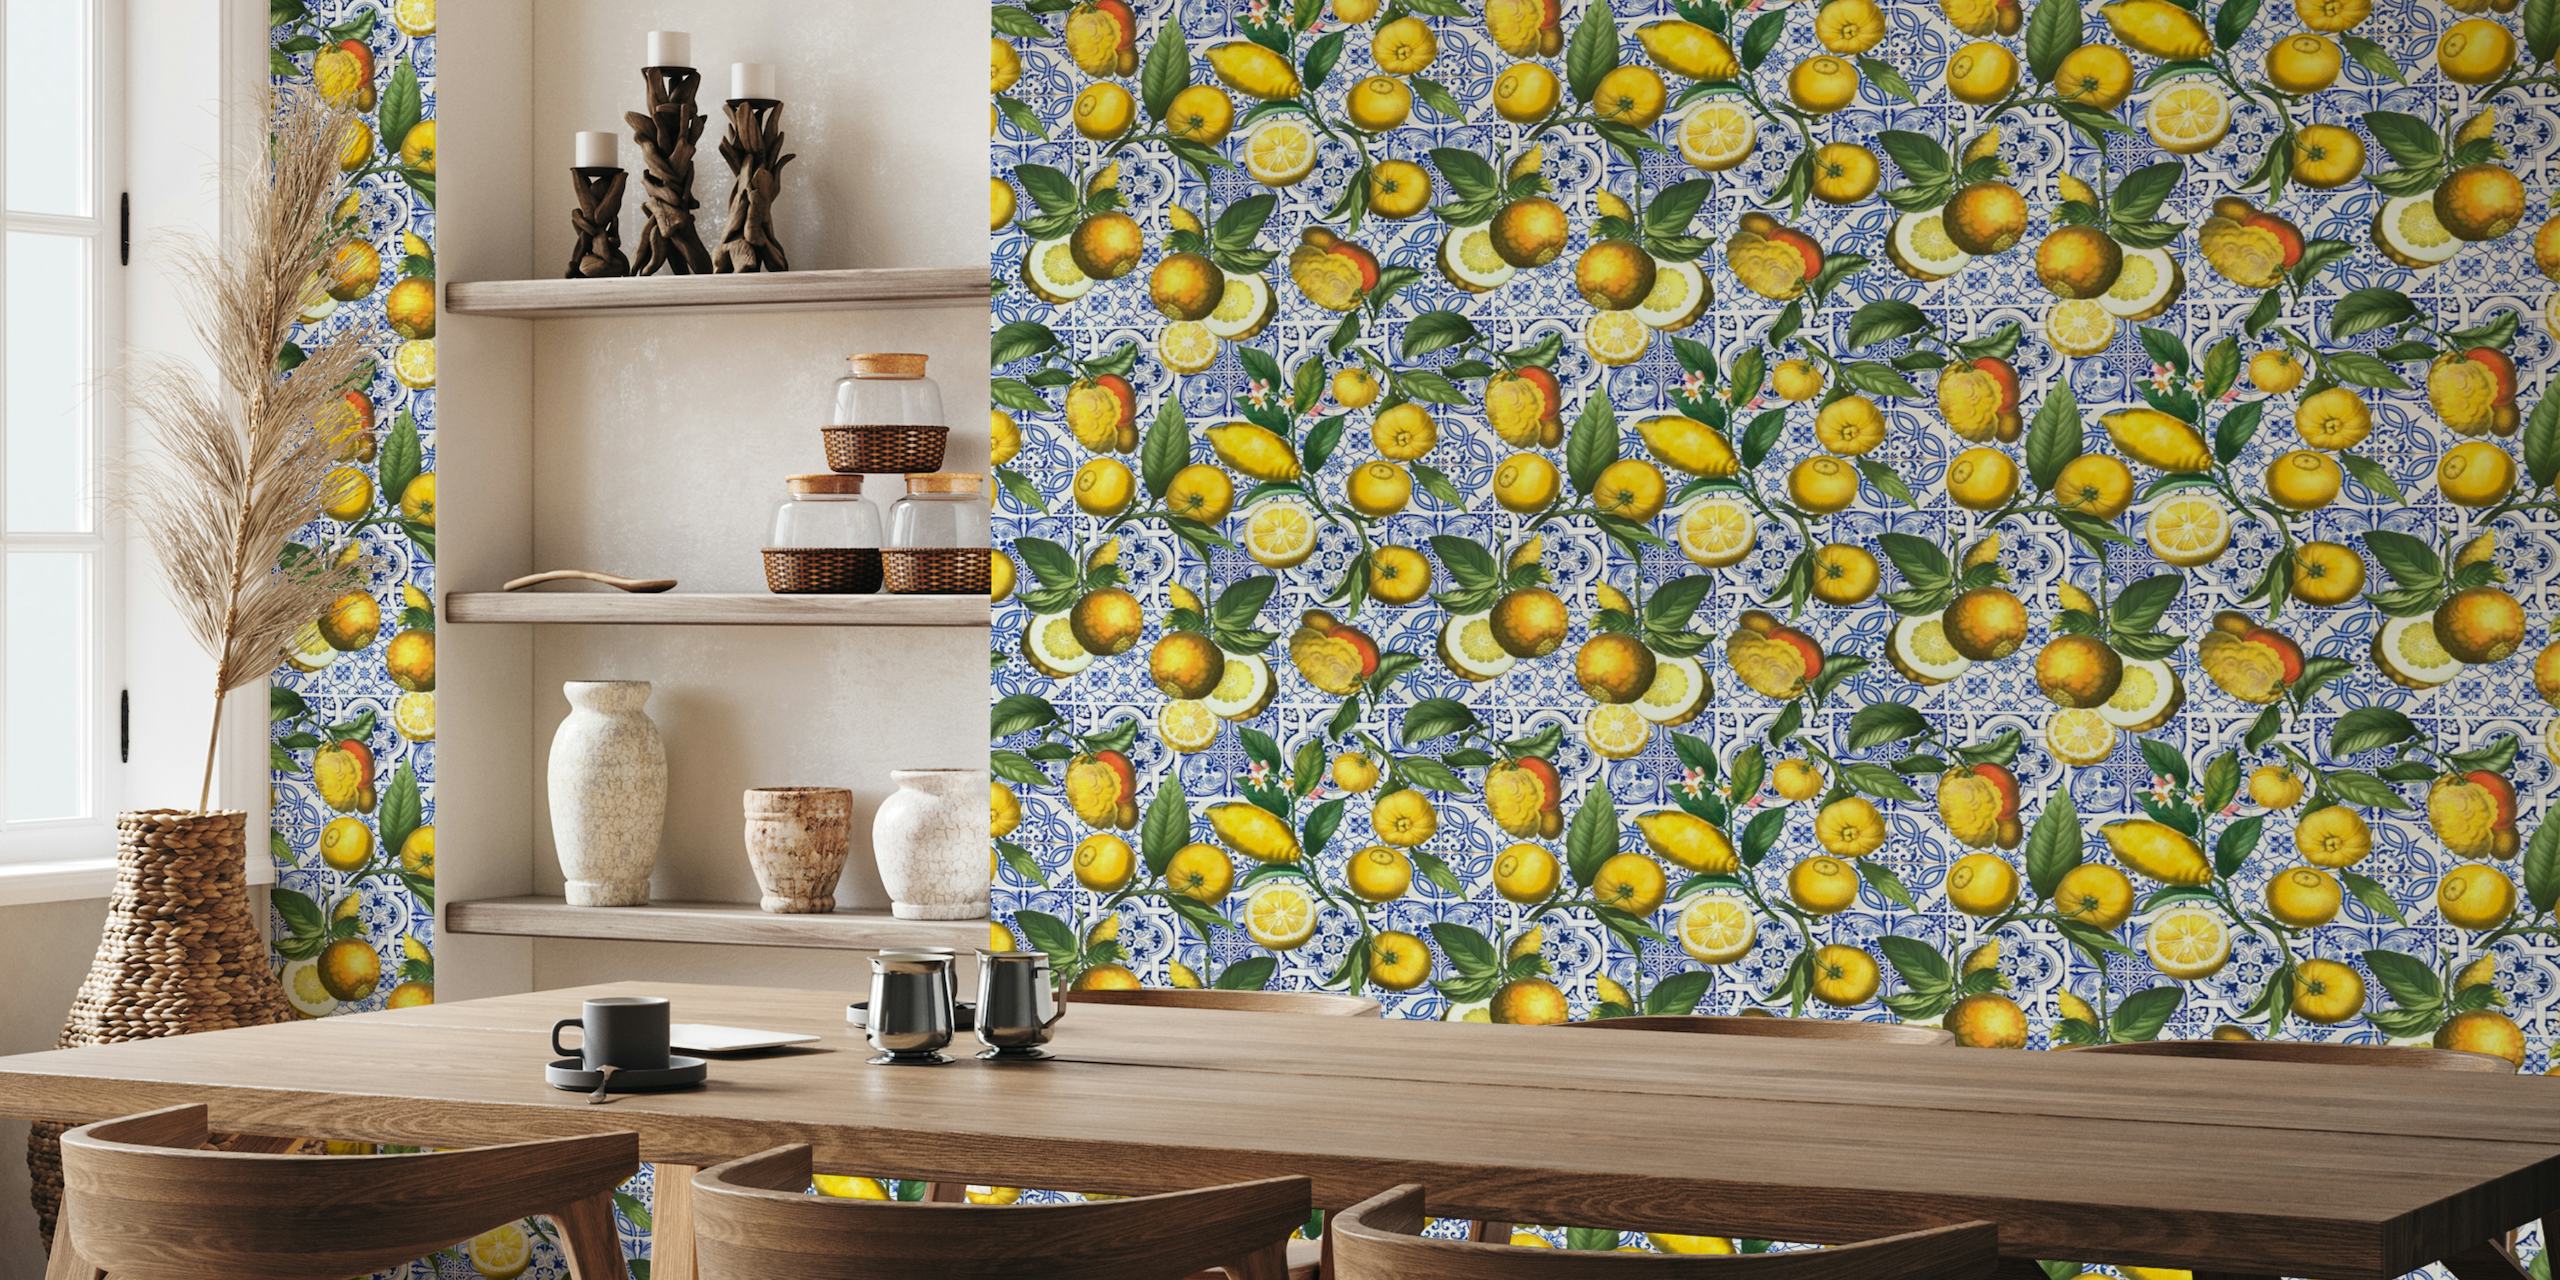 Lemon Fruits And Tiles behang